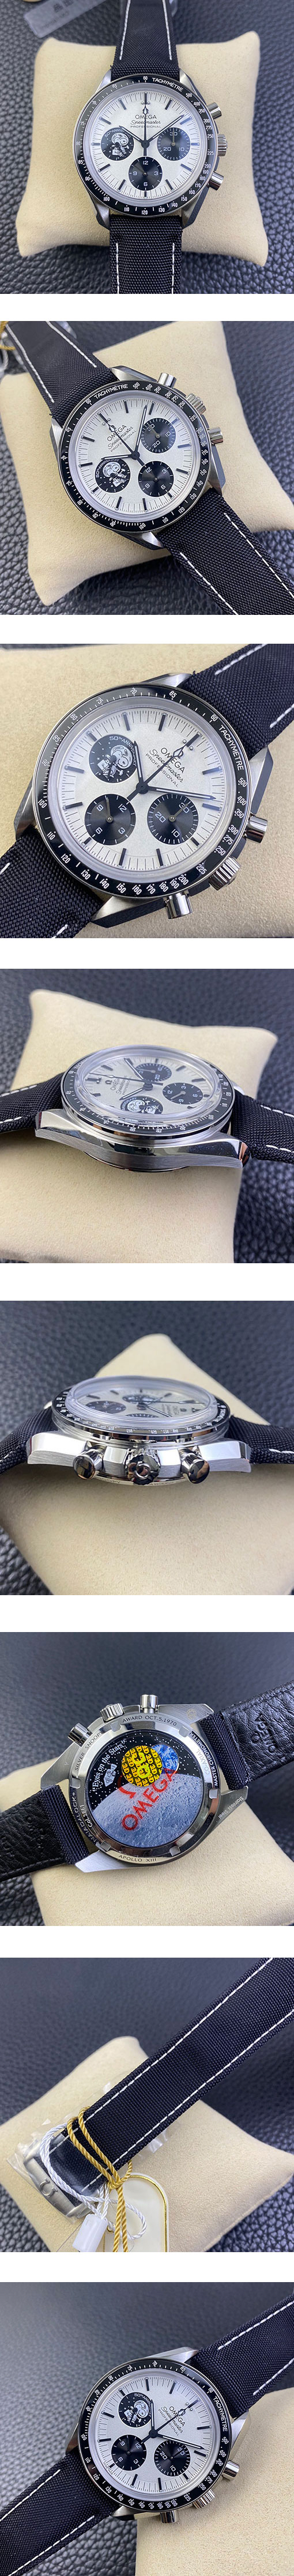 オメガコピー腕時計 スピードマスター アポロ13号 50周年記念 スヌーピー アワード 310.32.42.50.02.002【OM工場】